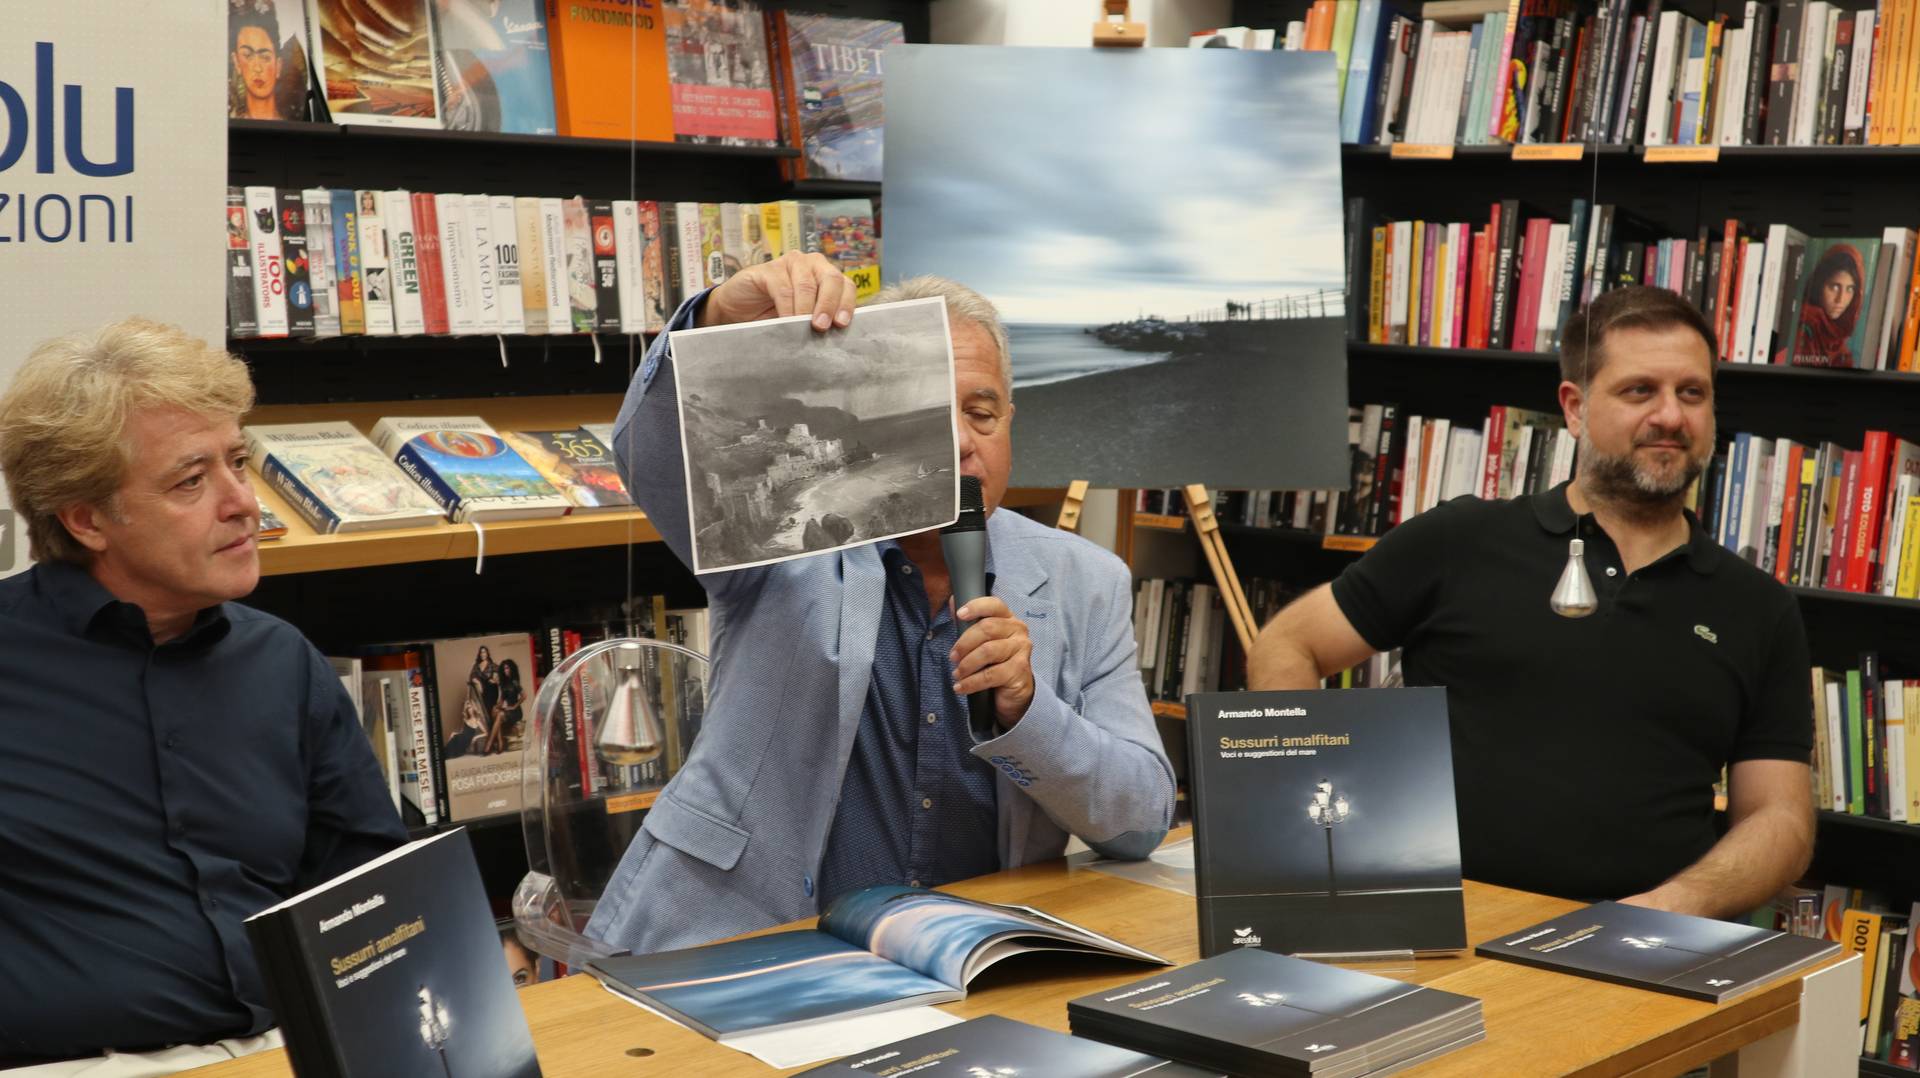 Presentazione libro fotografico La Feltrinelli "Sussurri Amalfitani"